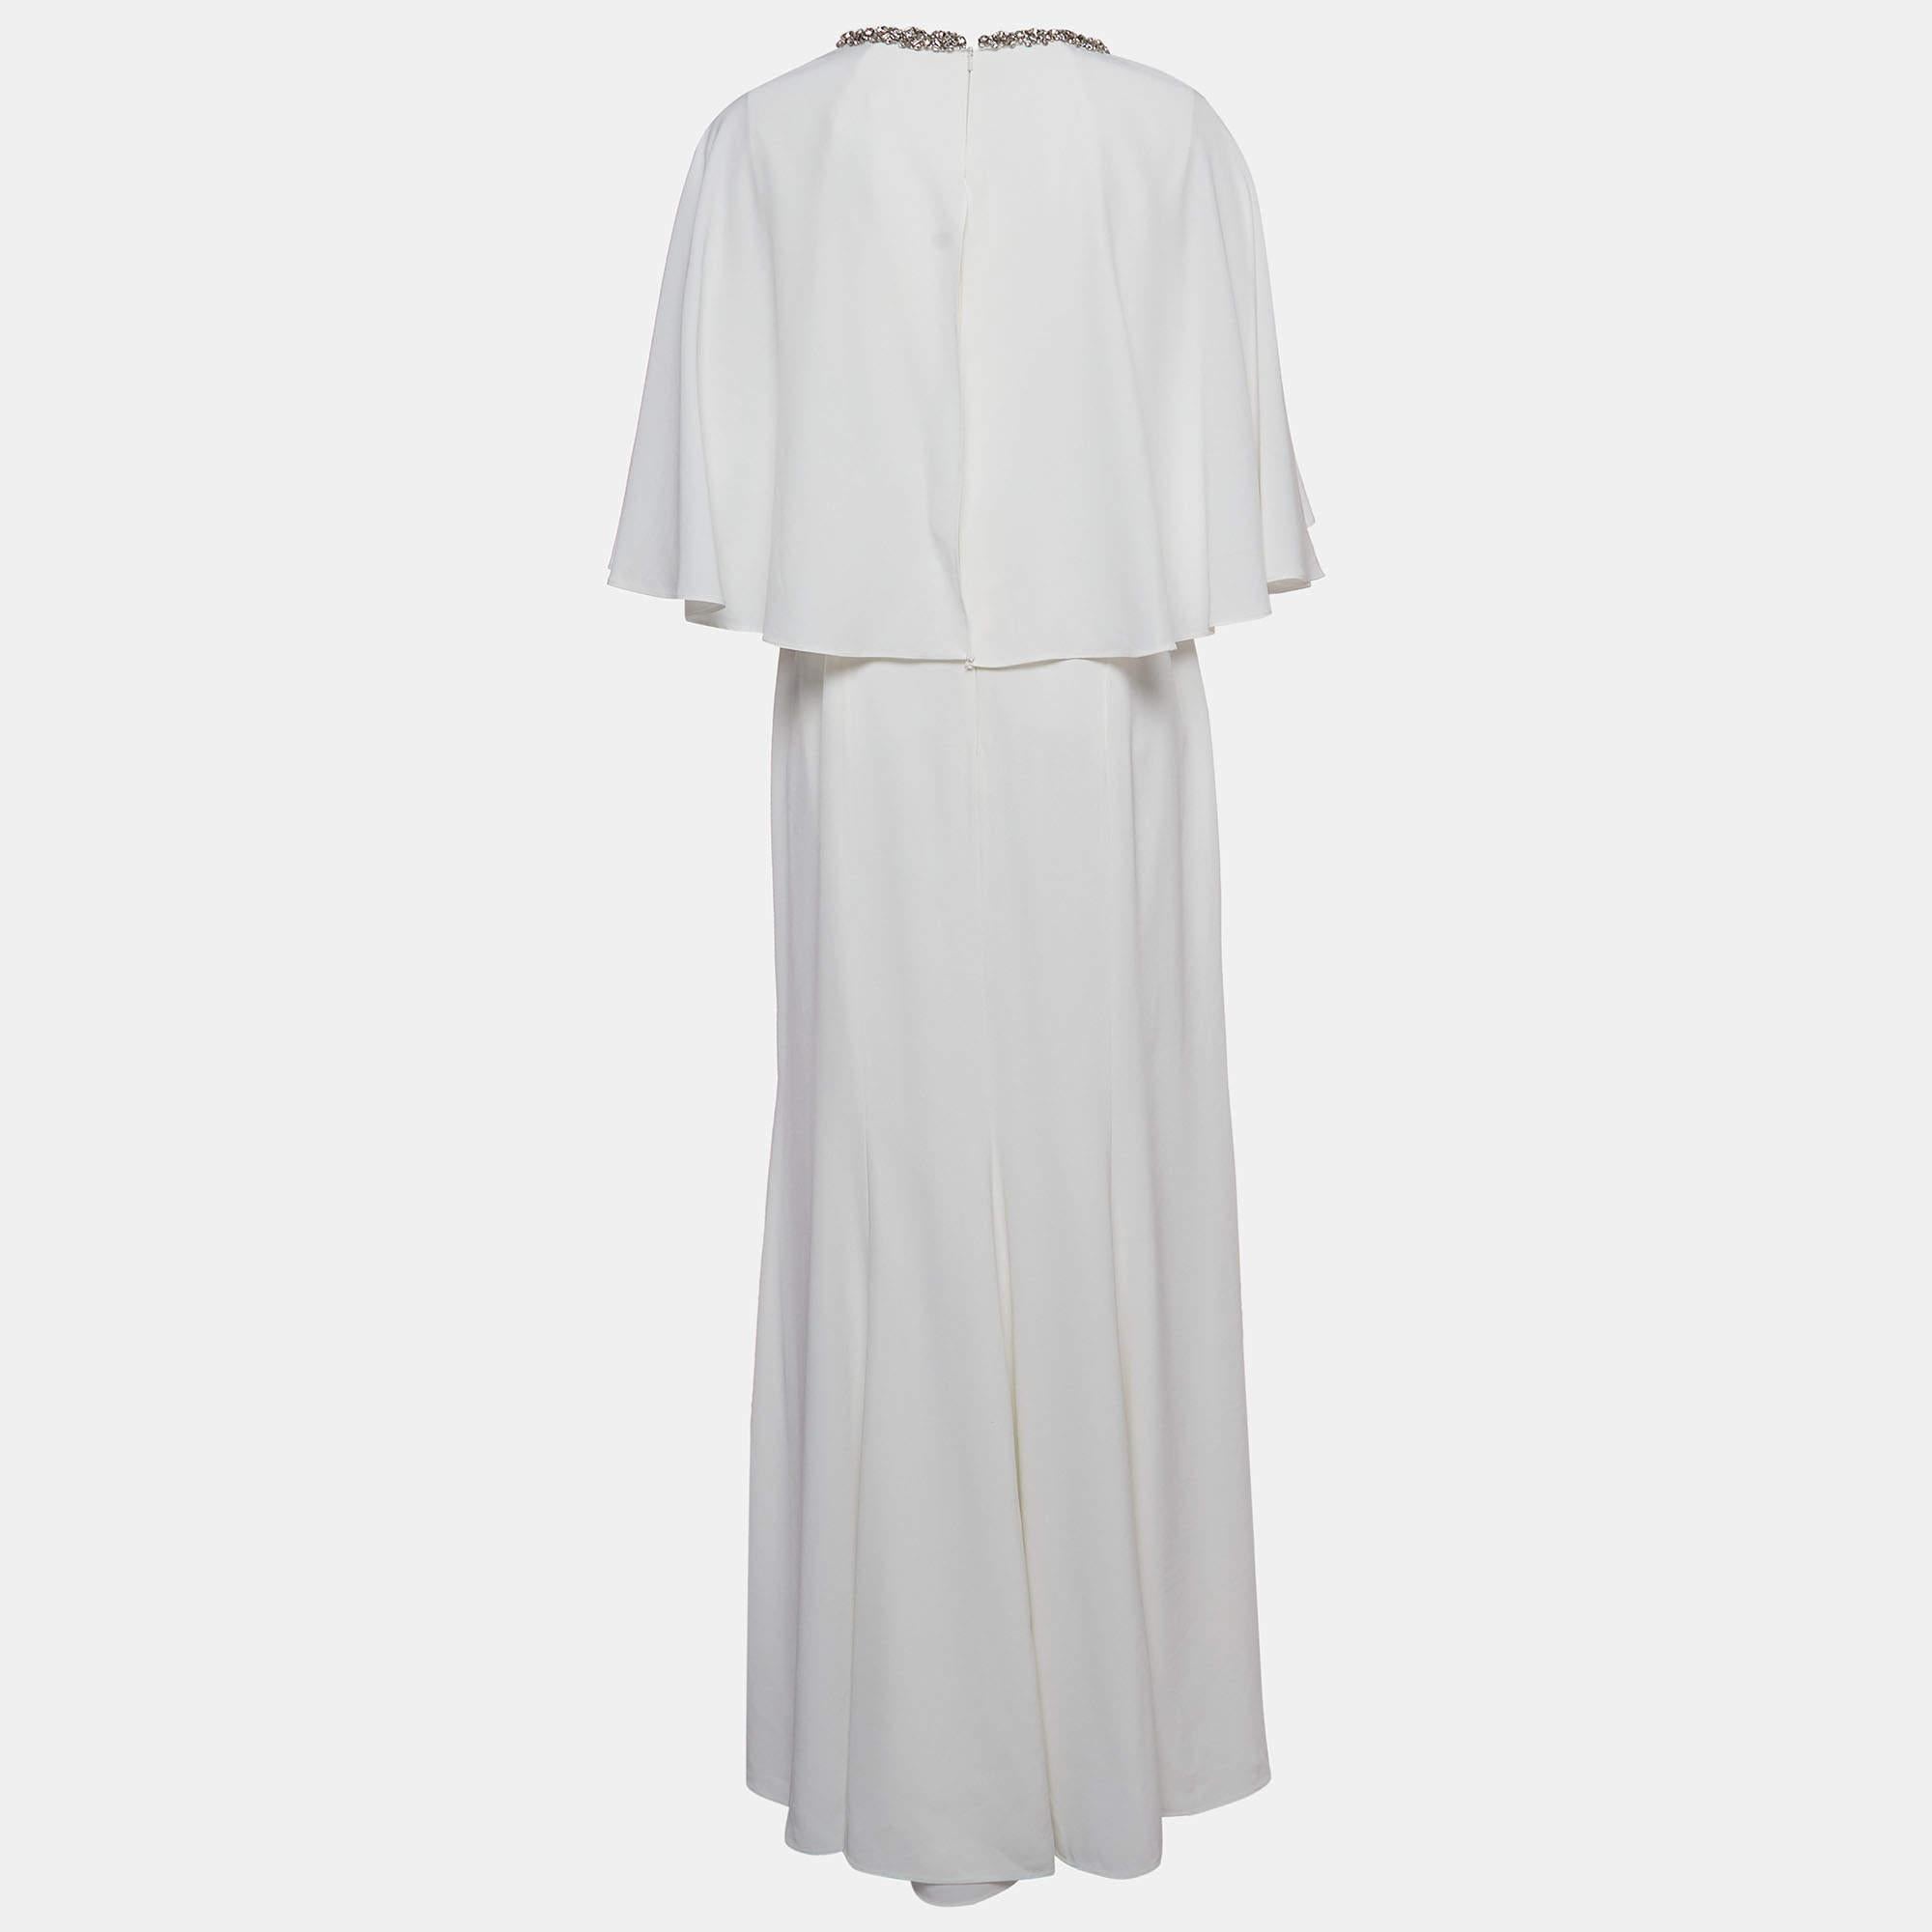 La robe de mariée Jenny Packham est un chef-d'œuvre exquis, doté d'un luxueux tissu de satin blanc qui se drape élégamment. Le décolleté de la robe est orné d'embellissements complexes en cristal, ajoutant une touche de glamour. Ce design intemporel